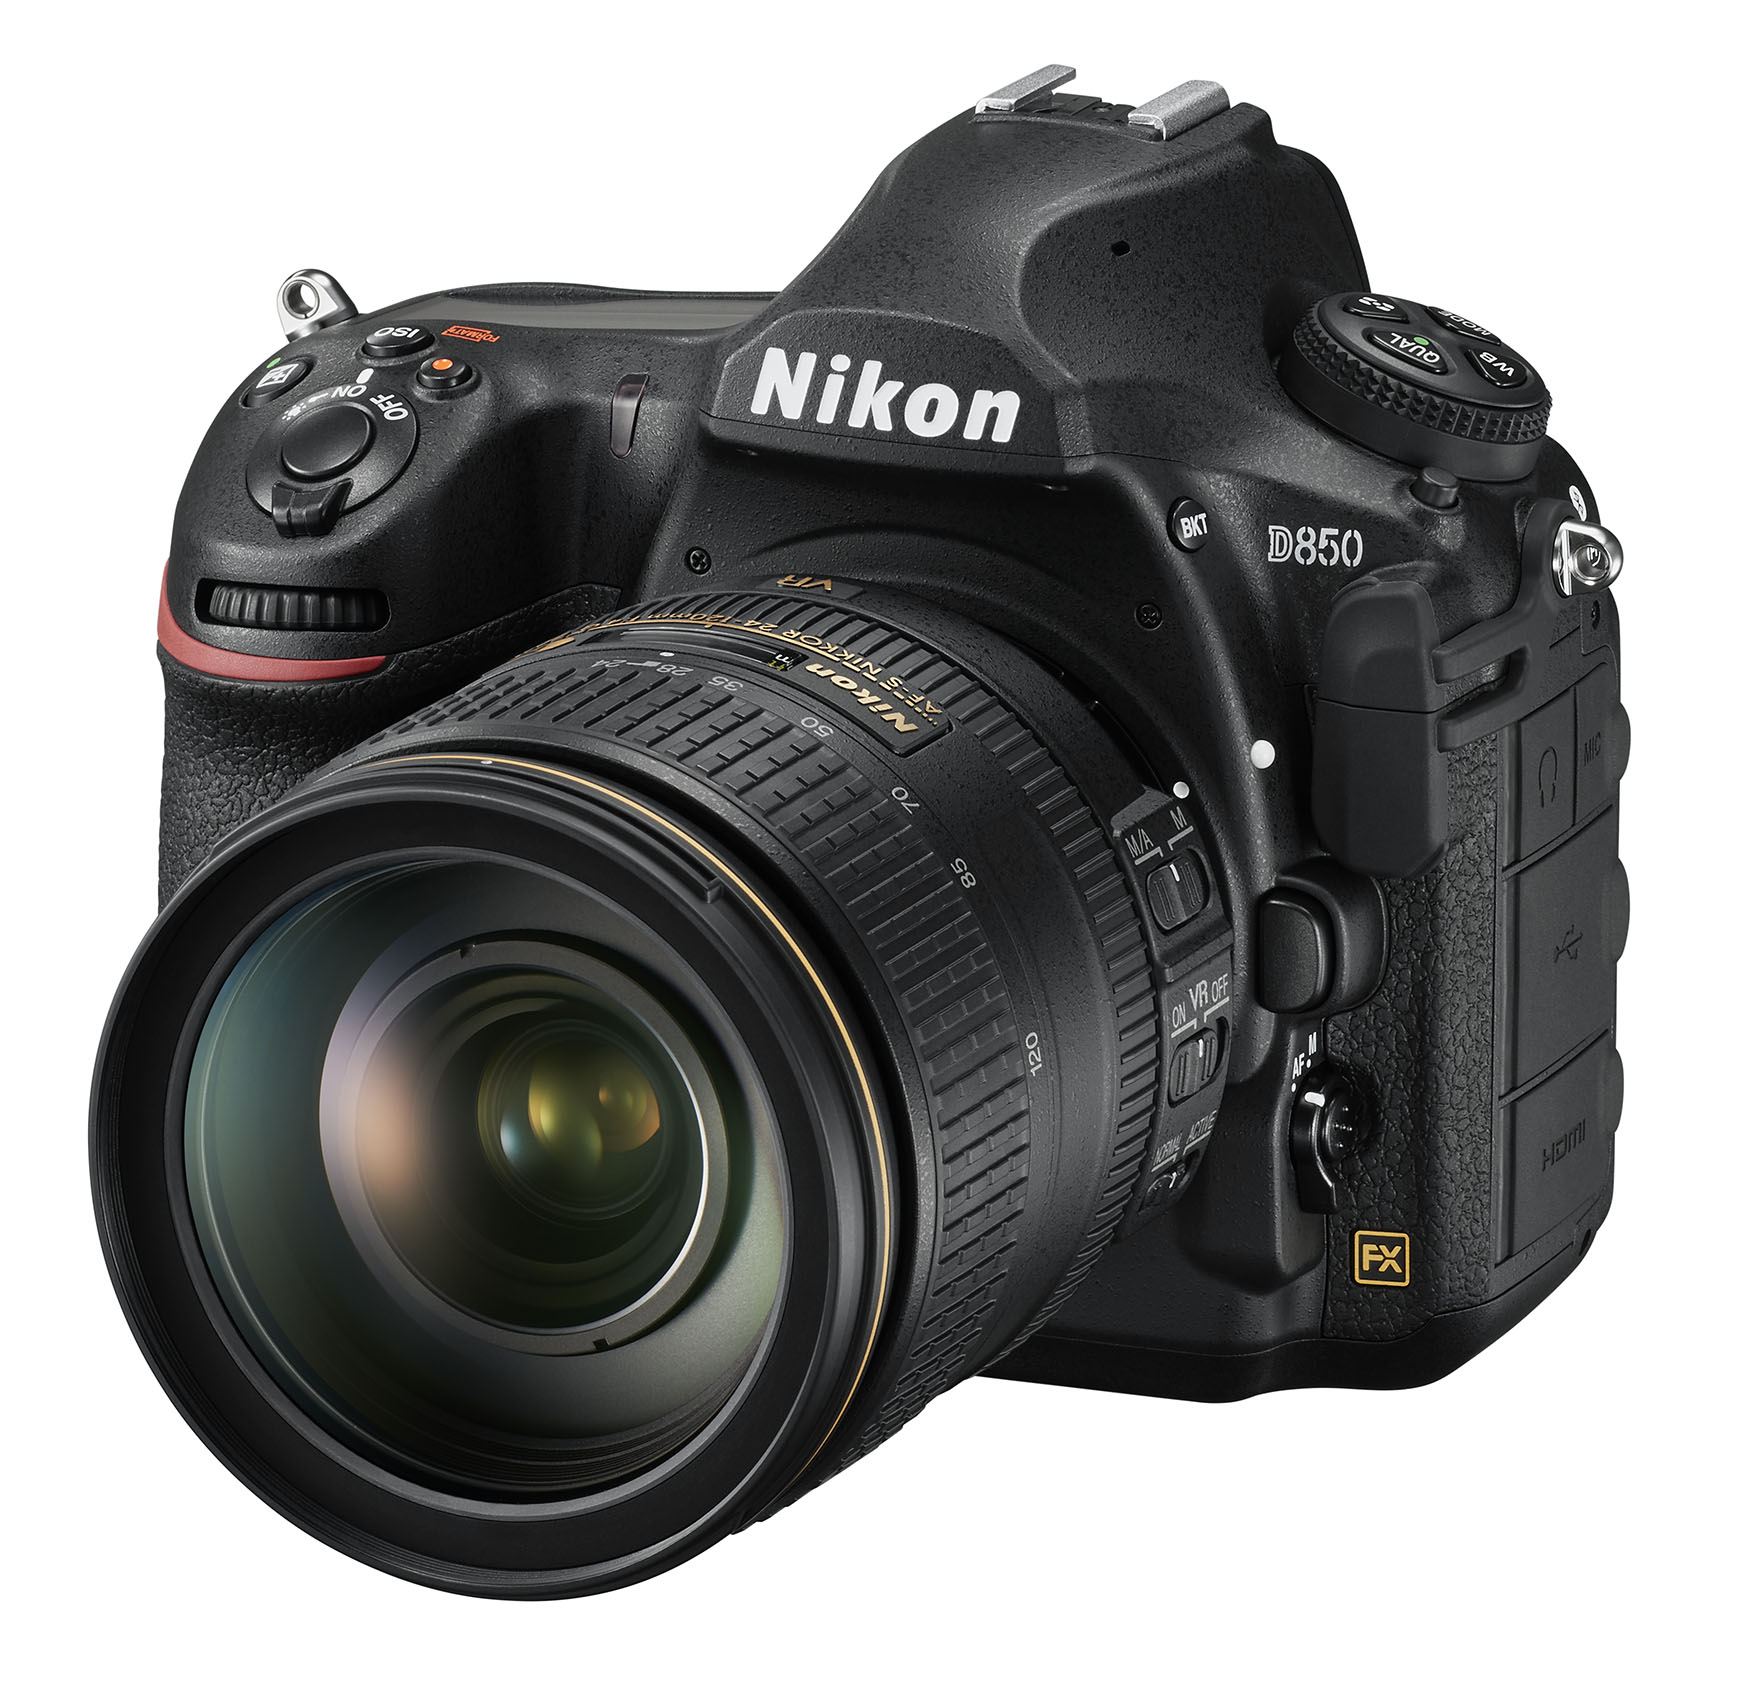 Nikon D850 kit 24-120mm VR (Mới 100%) - Bảo hành chính hãng VIC-VN 01 năm trên toàn quốc